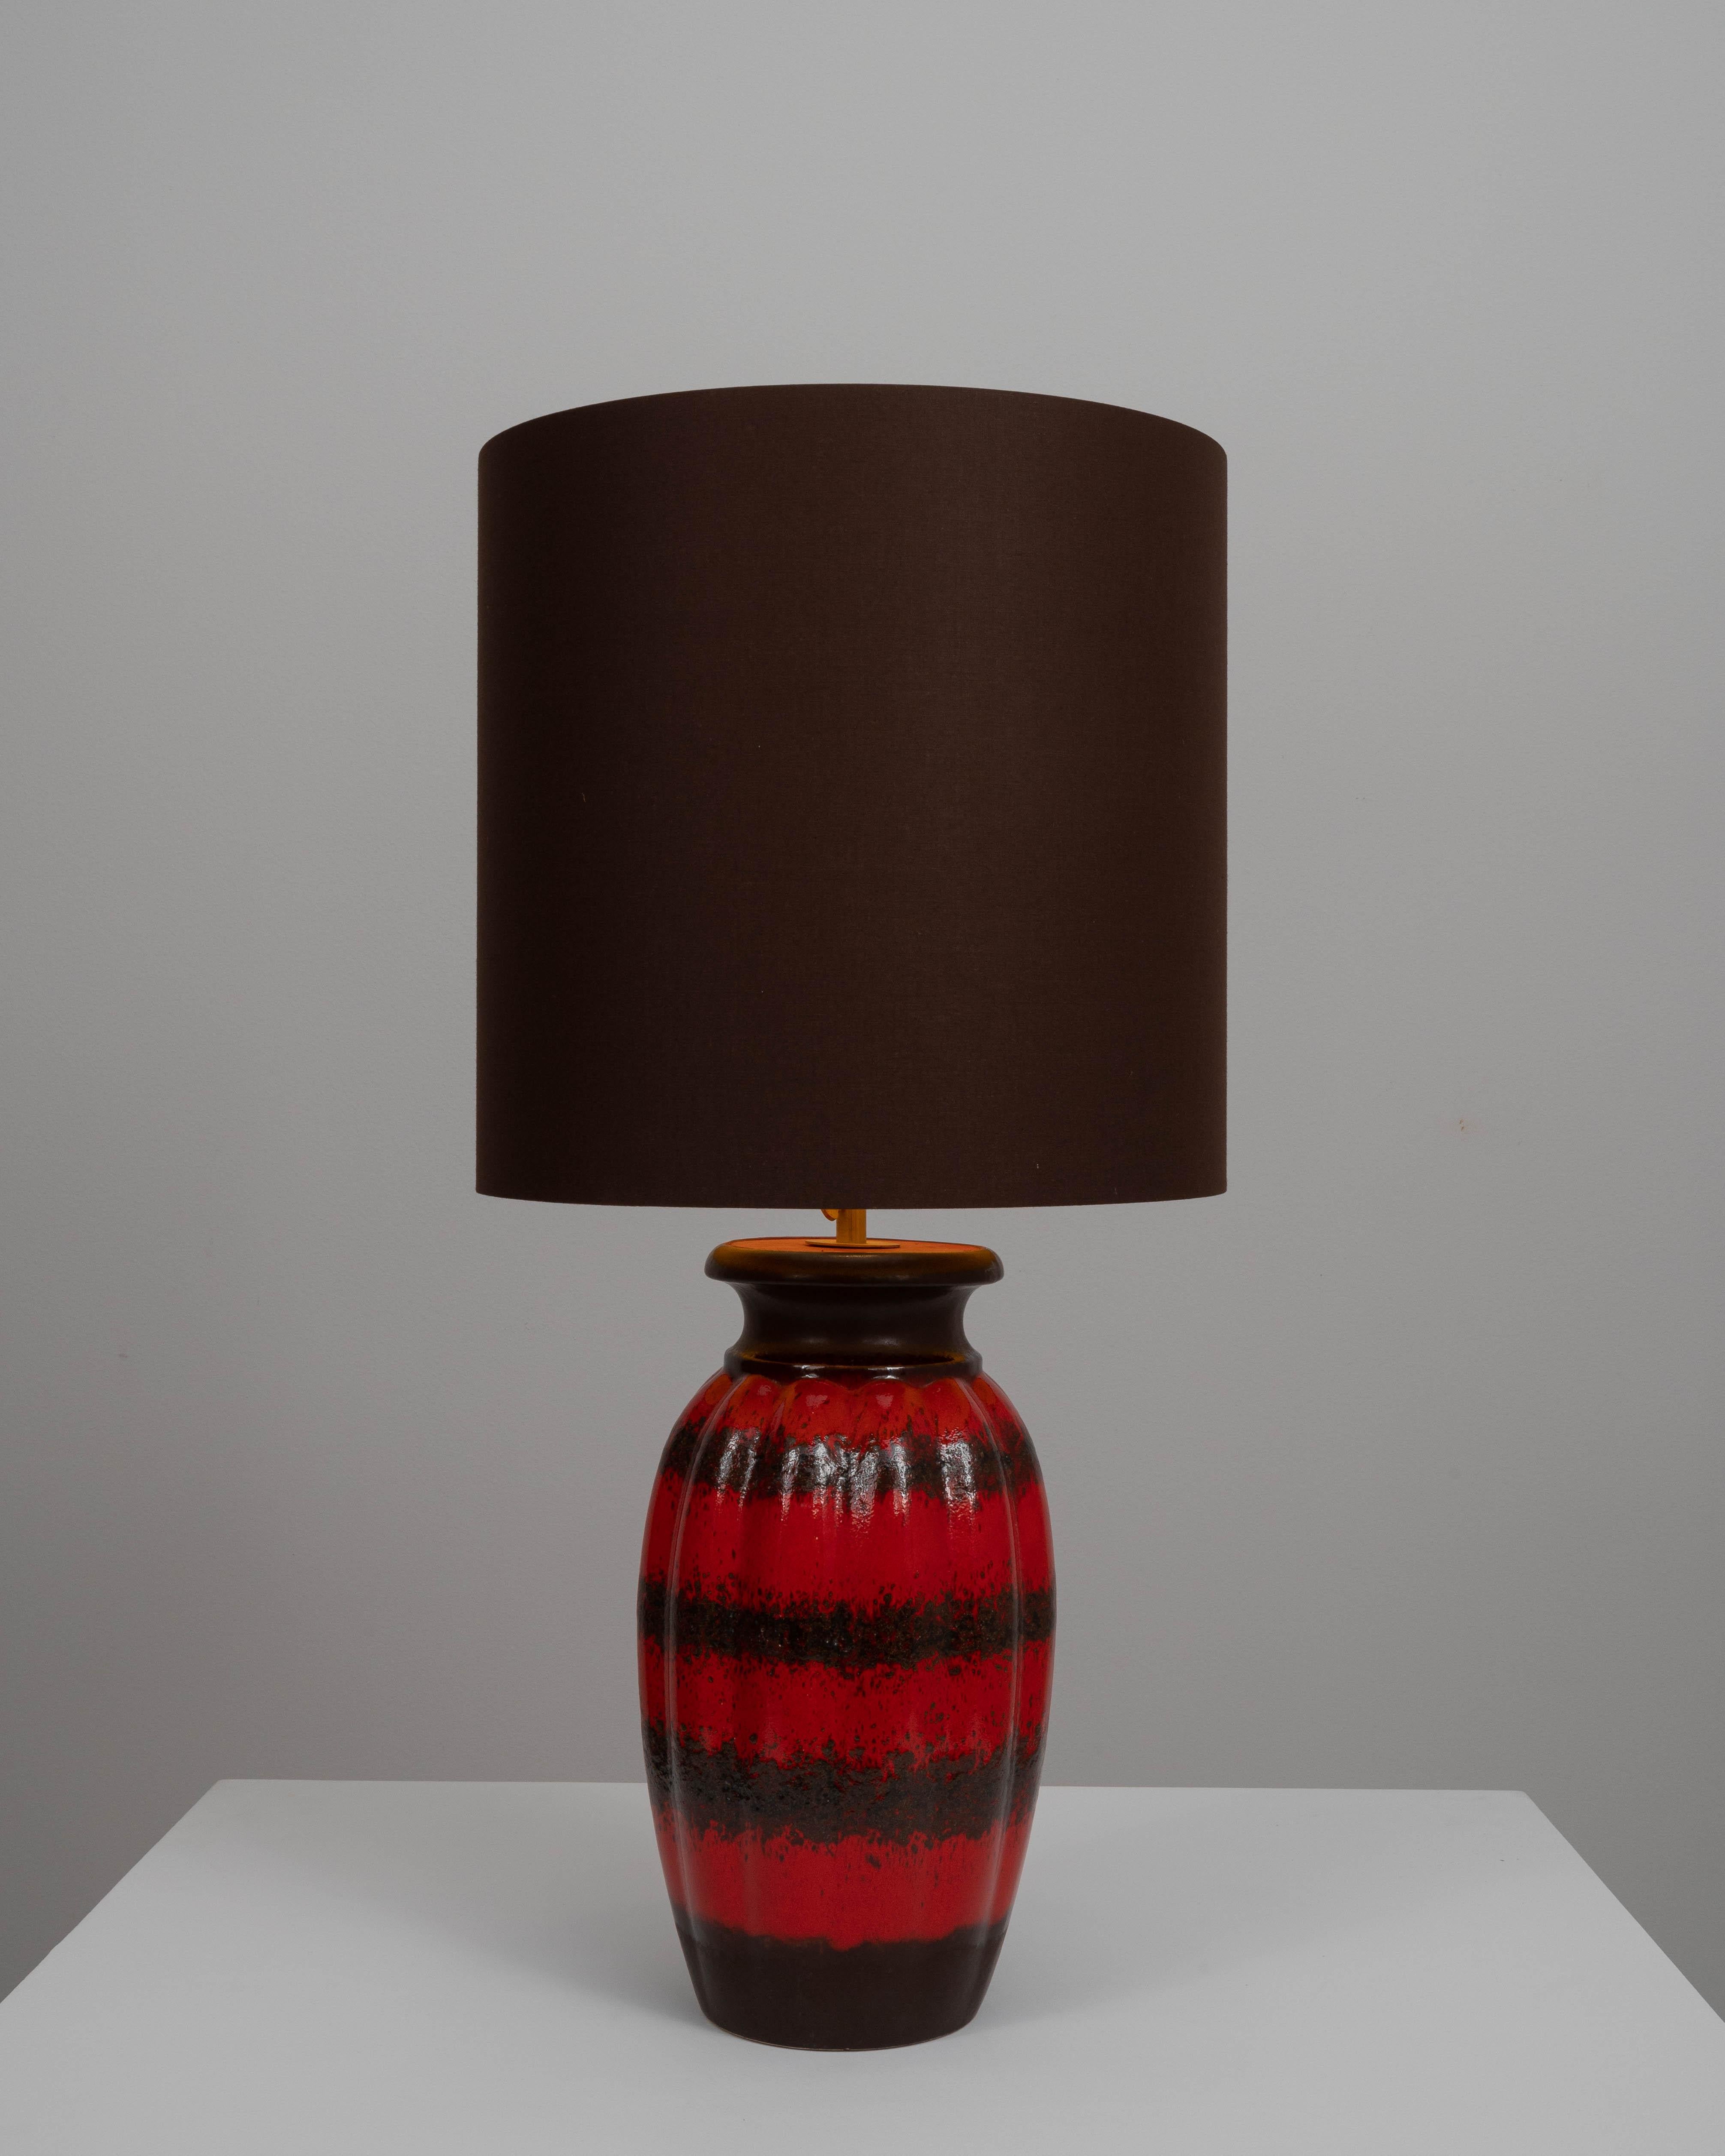 Cette lampe de table en céramique allemande du XXe siècle illustre les sensibilités de design audacieuses et expressives qui caractérisaient l'époque. La base de la lampe est un vaisseau artistique vibrant, avec une riche glaçure cramoisie qui coule